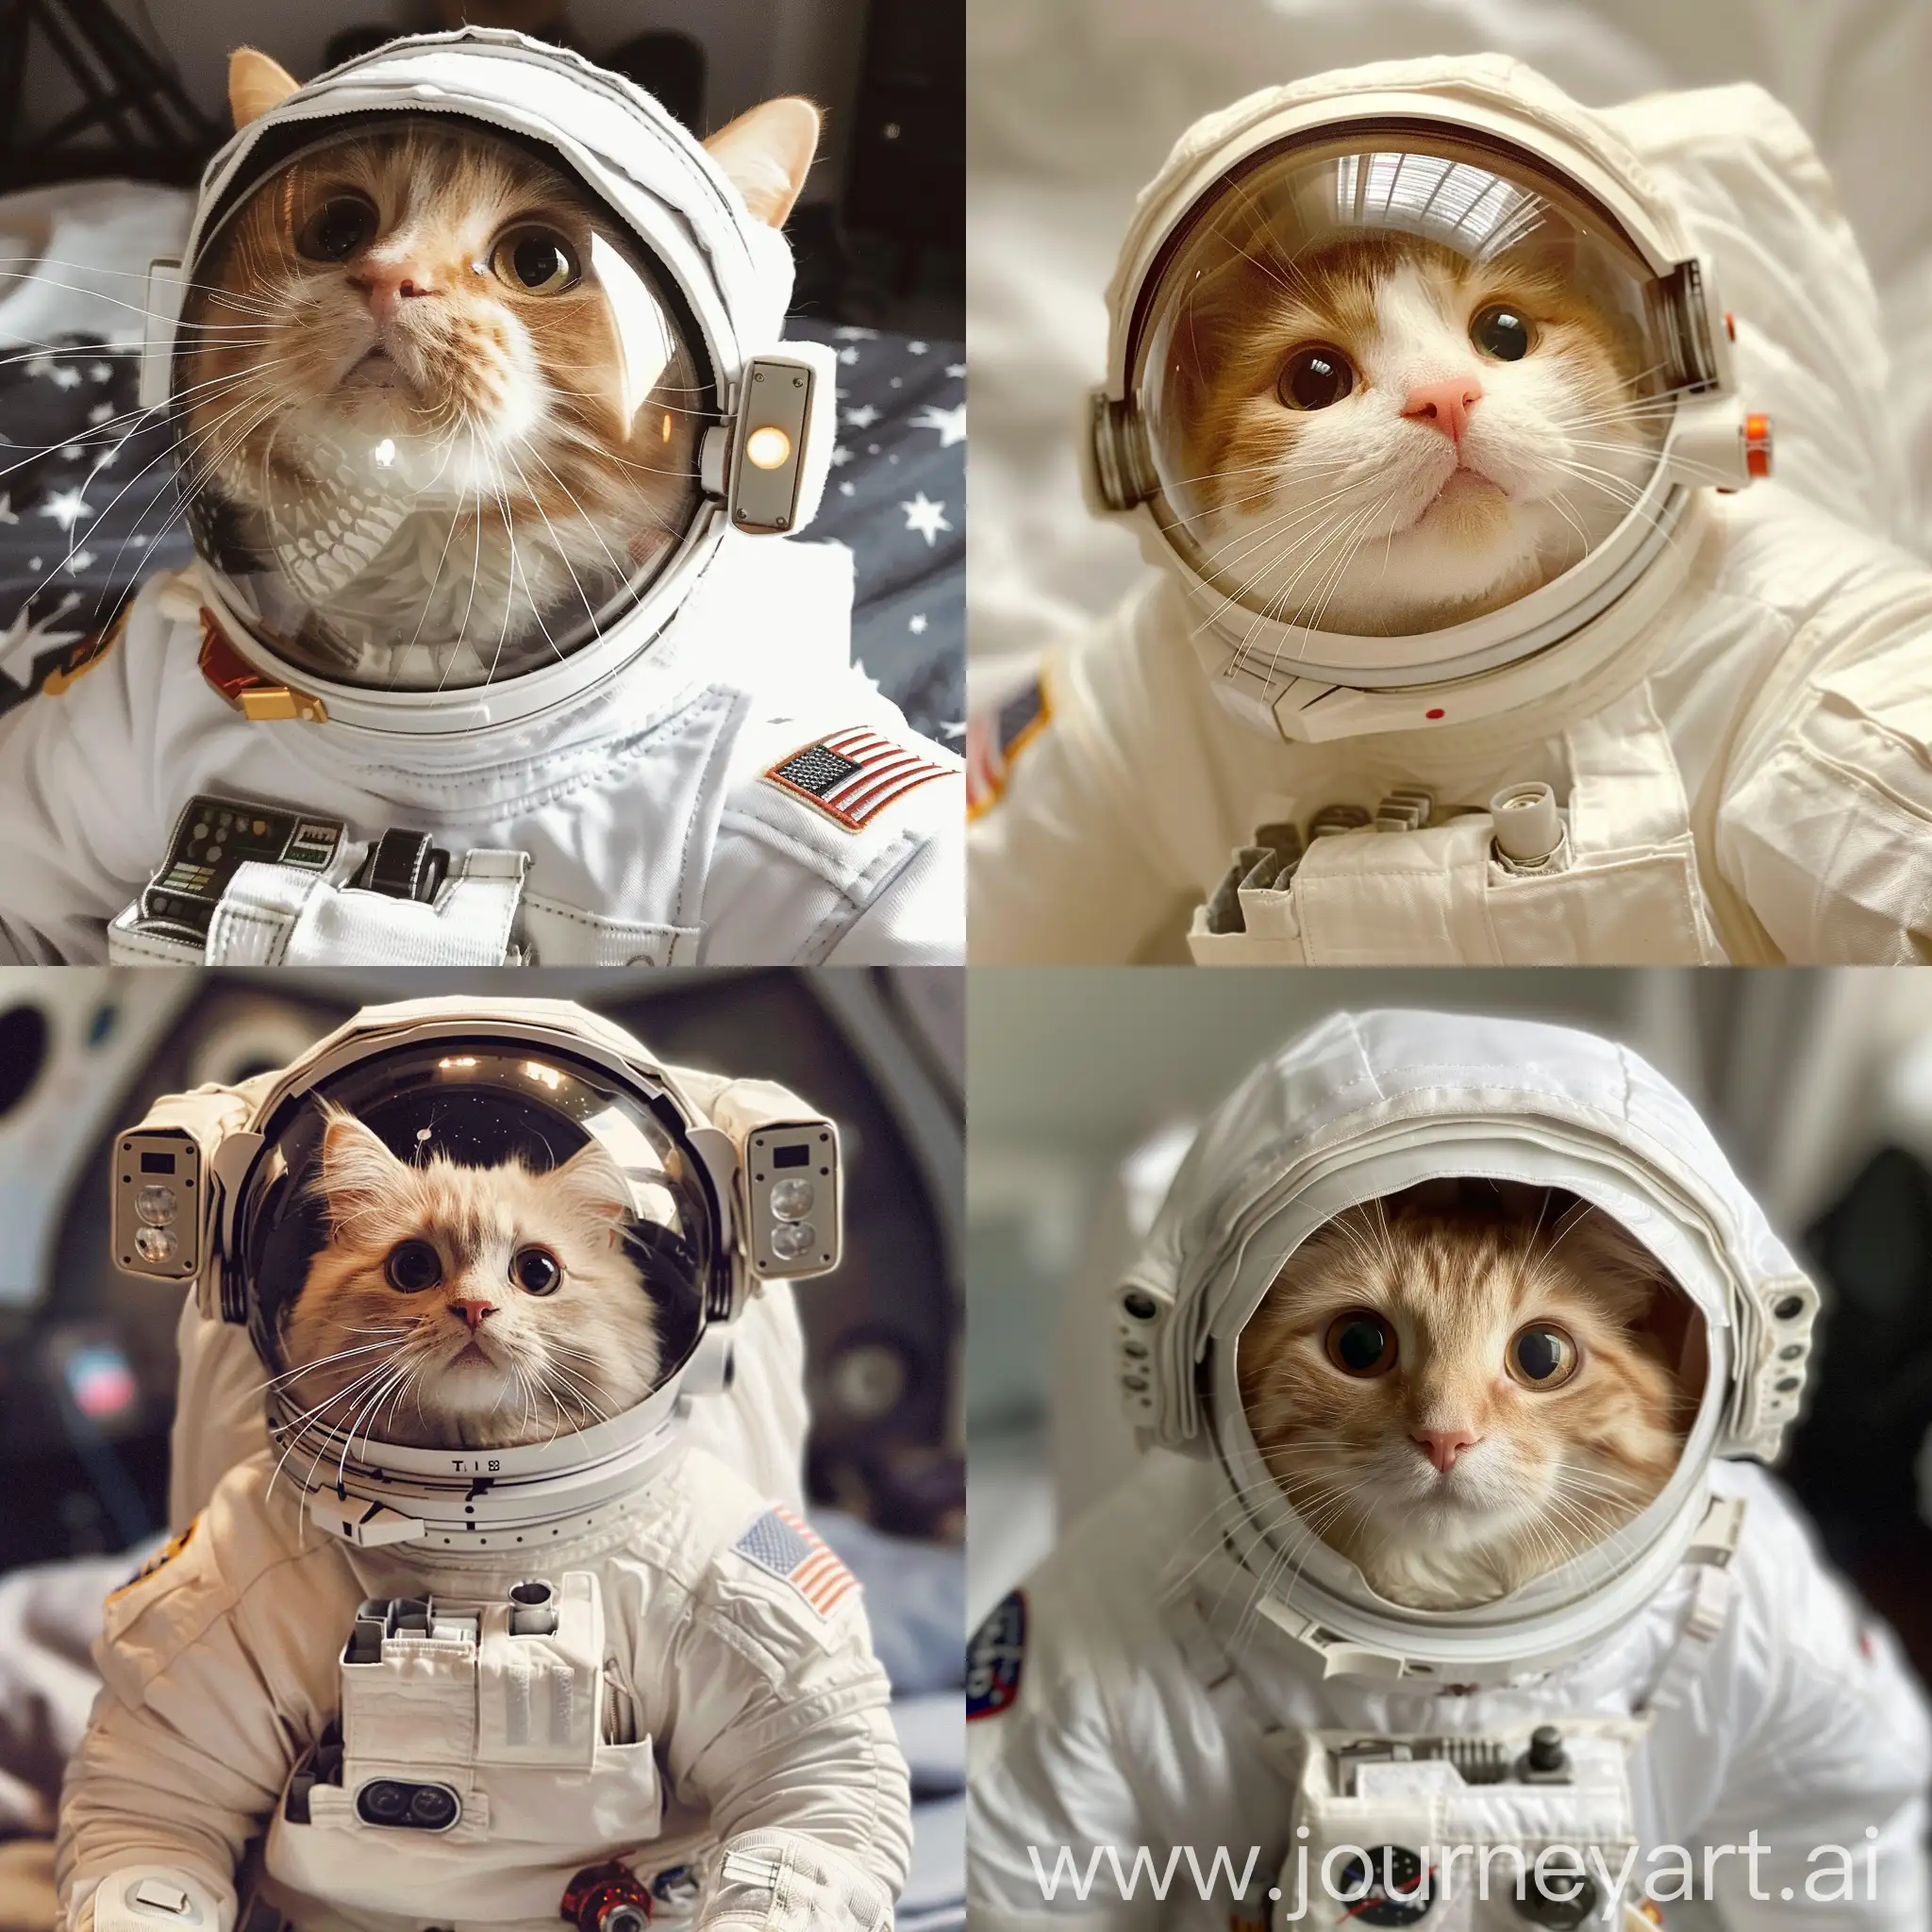 Cat-in-Astronaut-Costume-Exploration-Artwork